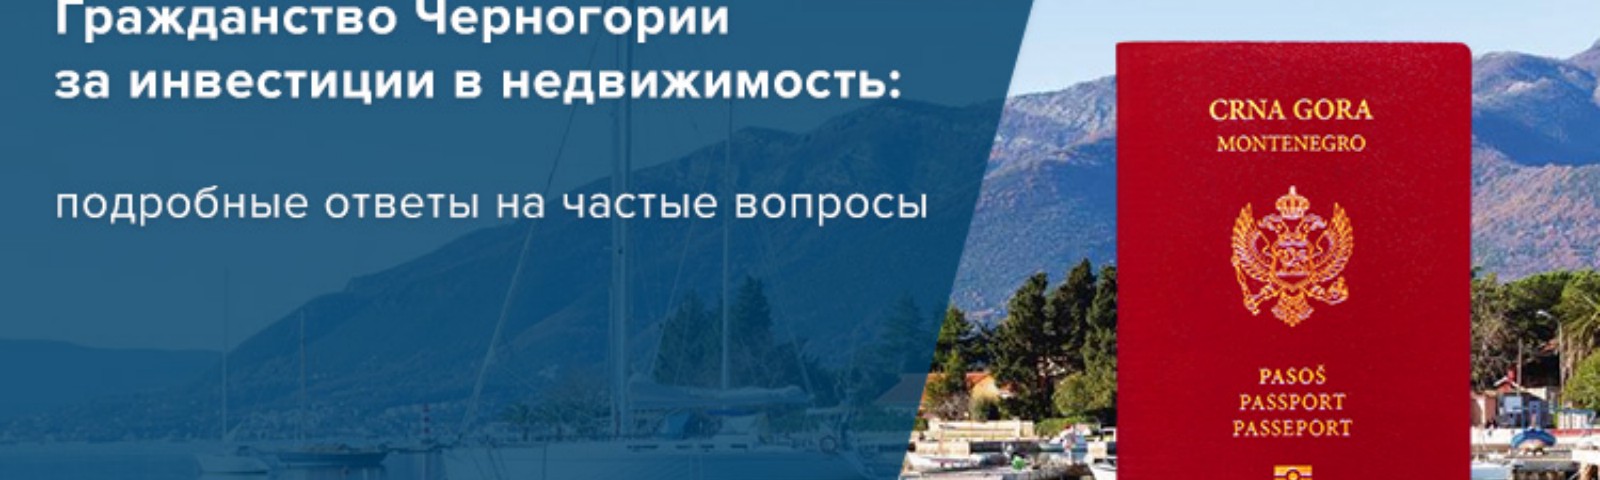 Как получить гражданство и паспорт черногории эмигранту из россии в 2021